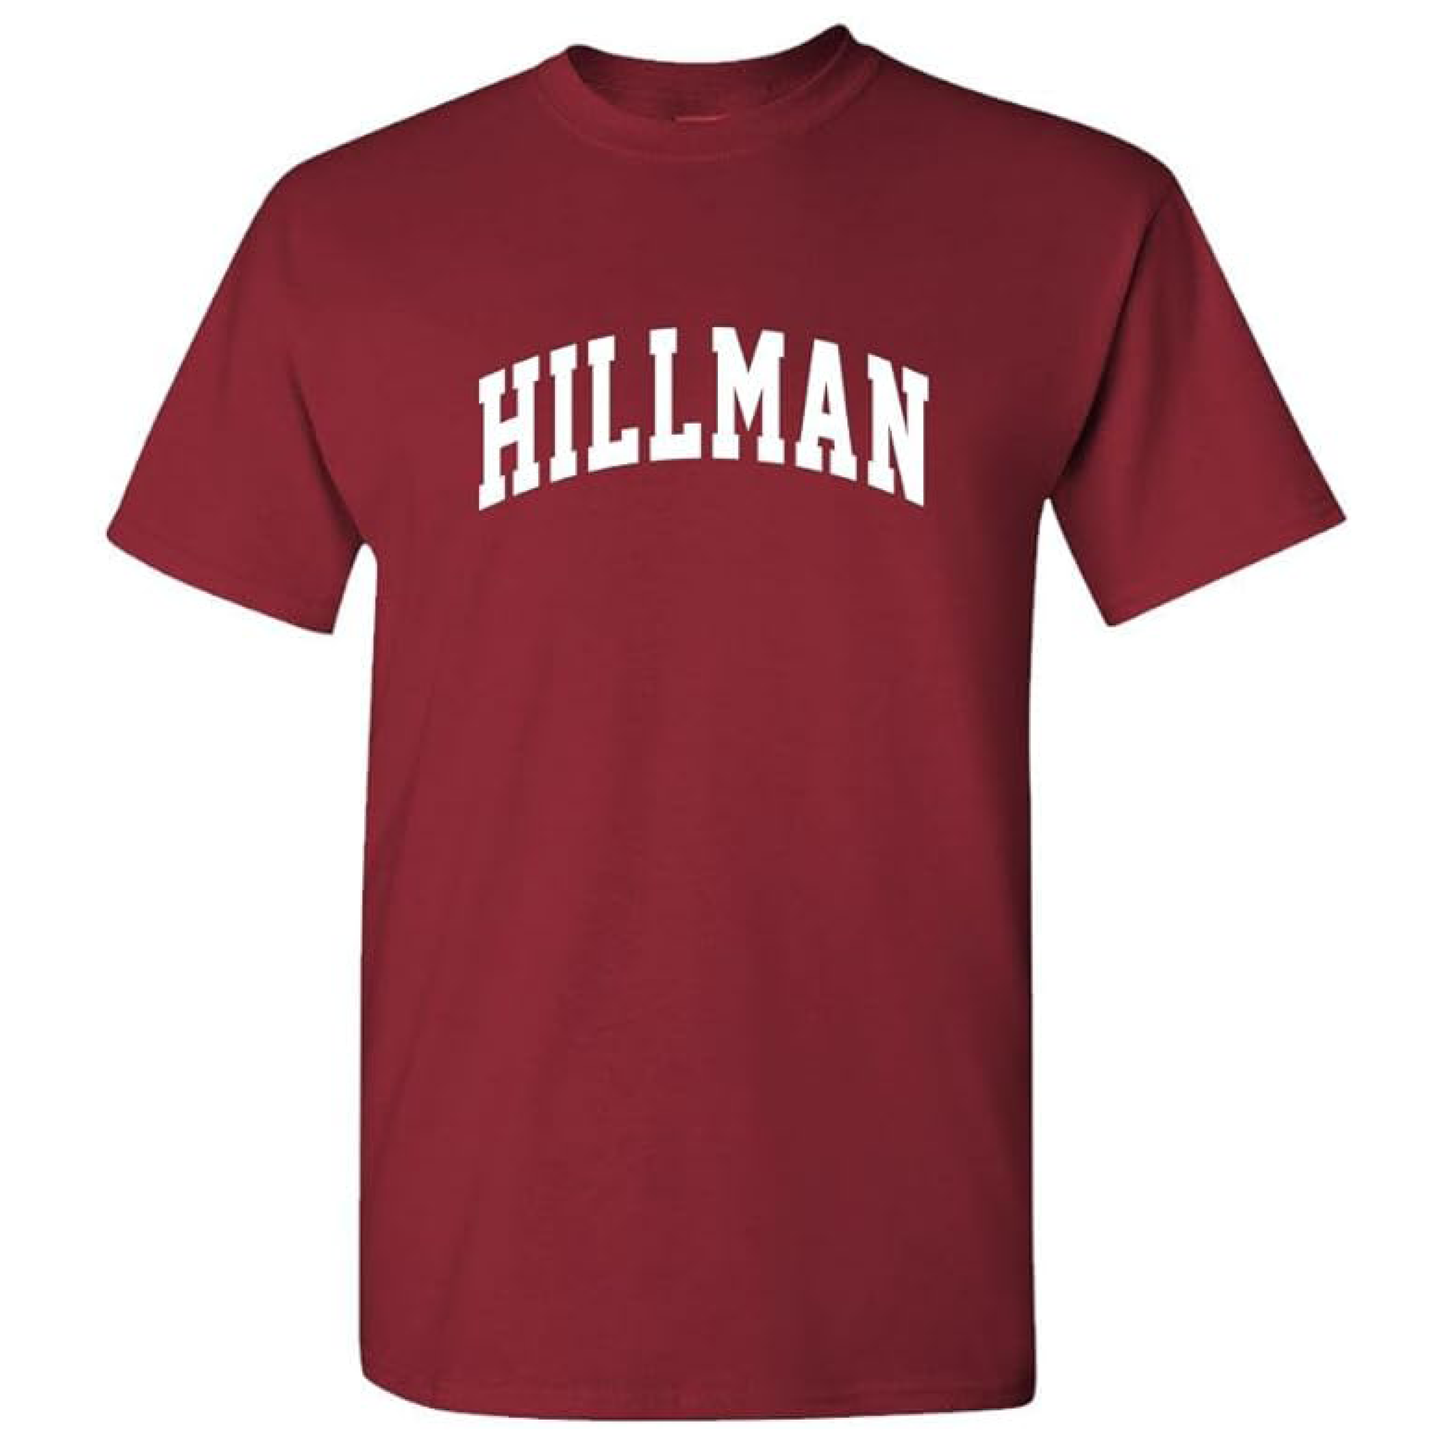 RETRO HBCU Hillman Vintage Mens Cotton T-Shirt